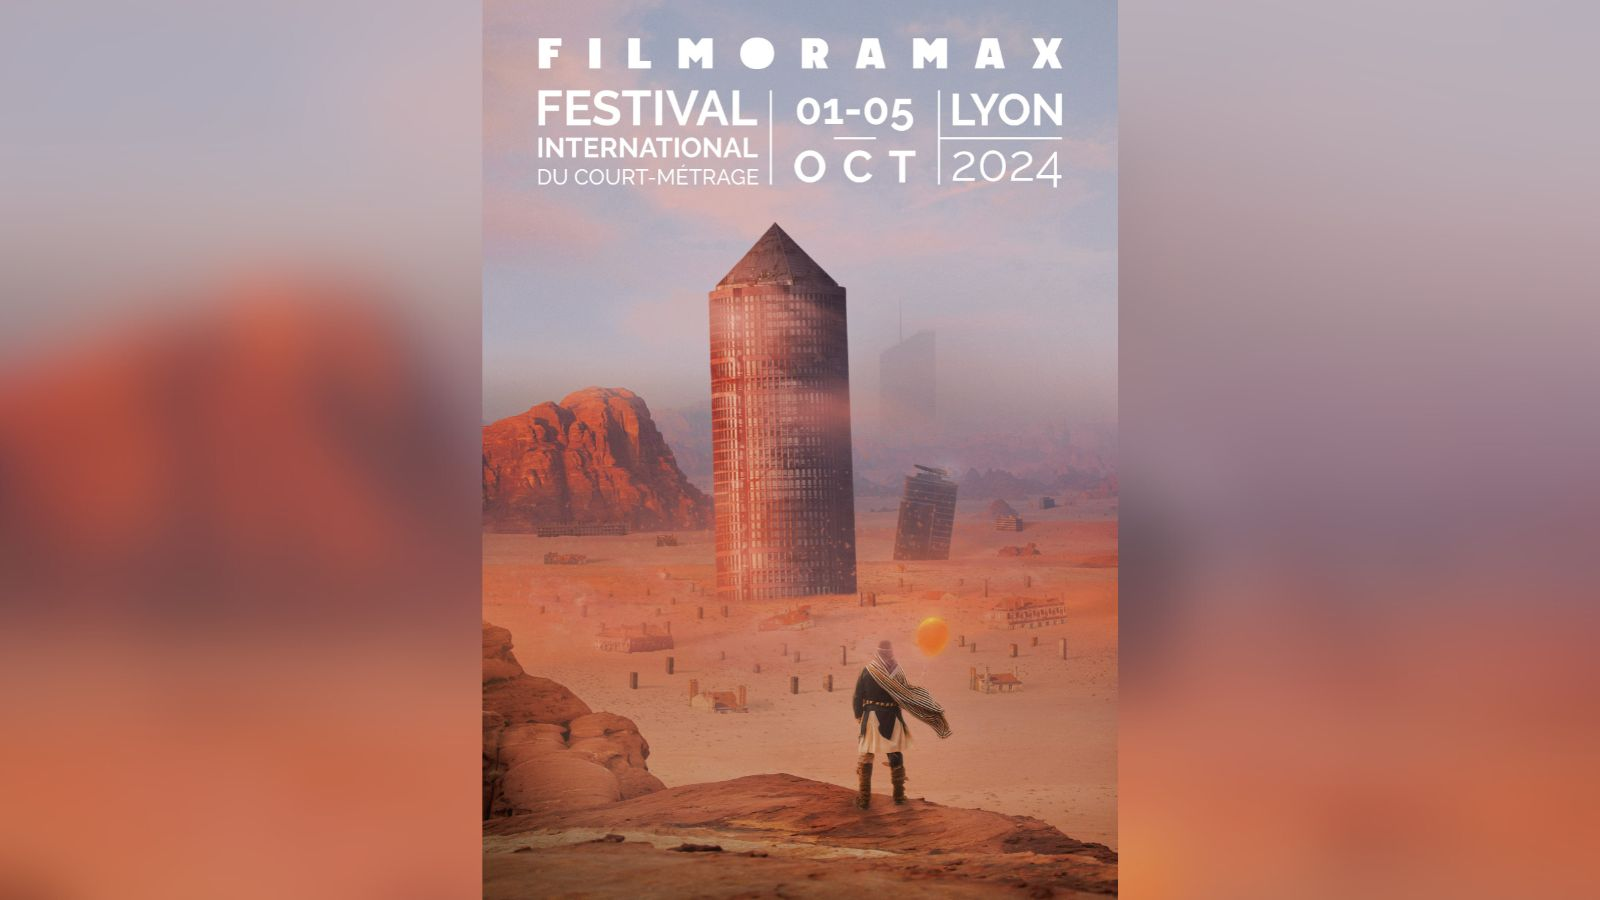 Filmoramax 2024 sous les sables